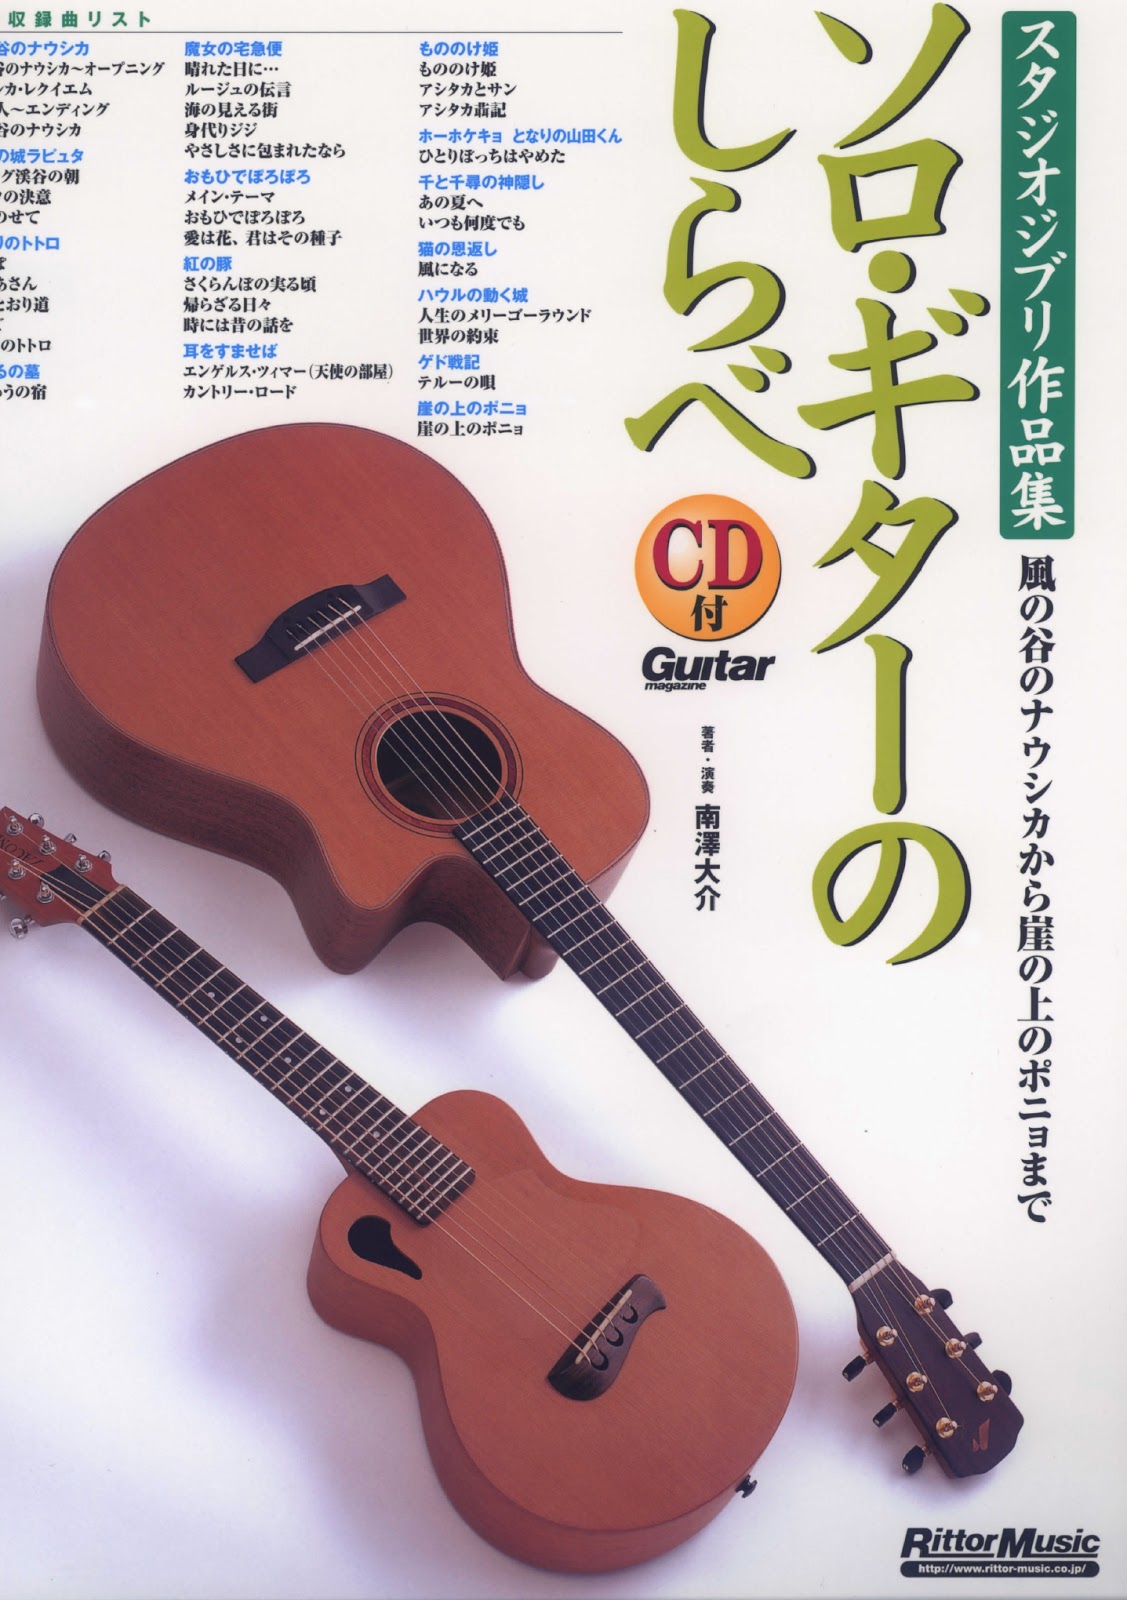 ギターでハッピー 楽譜 南澤大介 ソロギターのしらべスタジオジブリ作品集